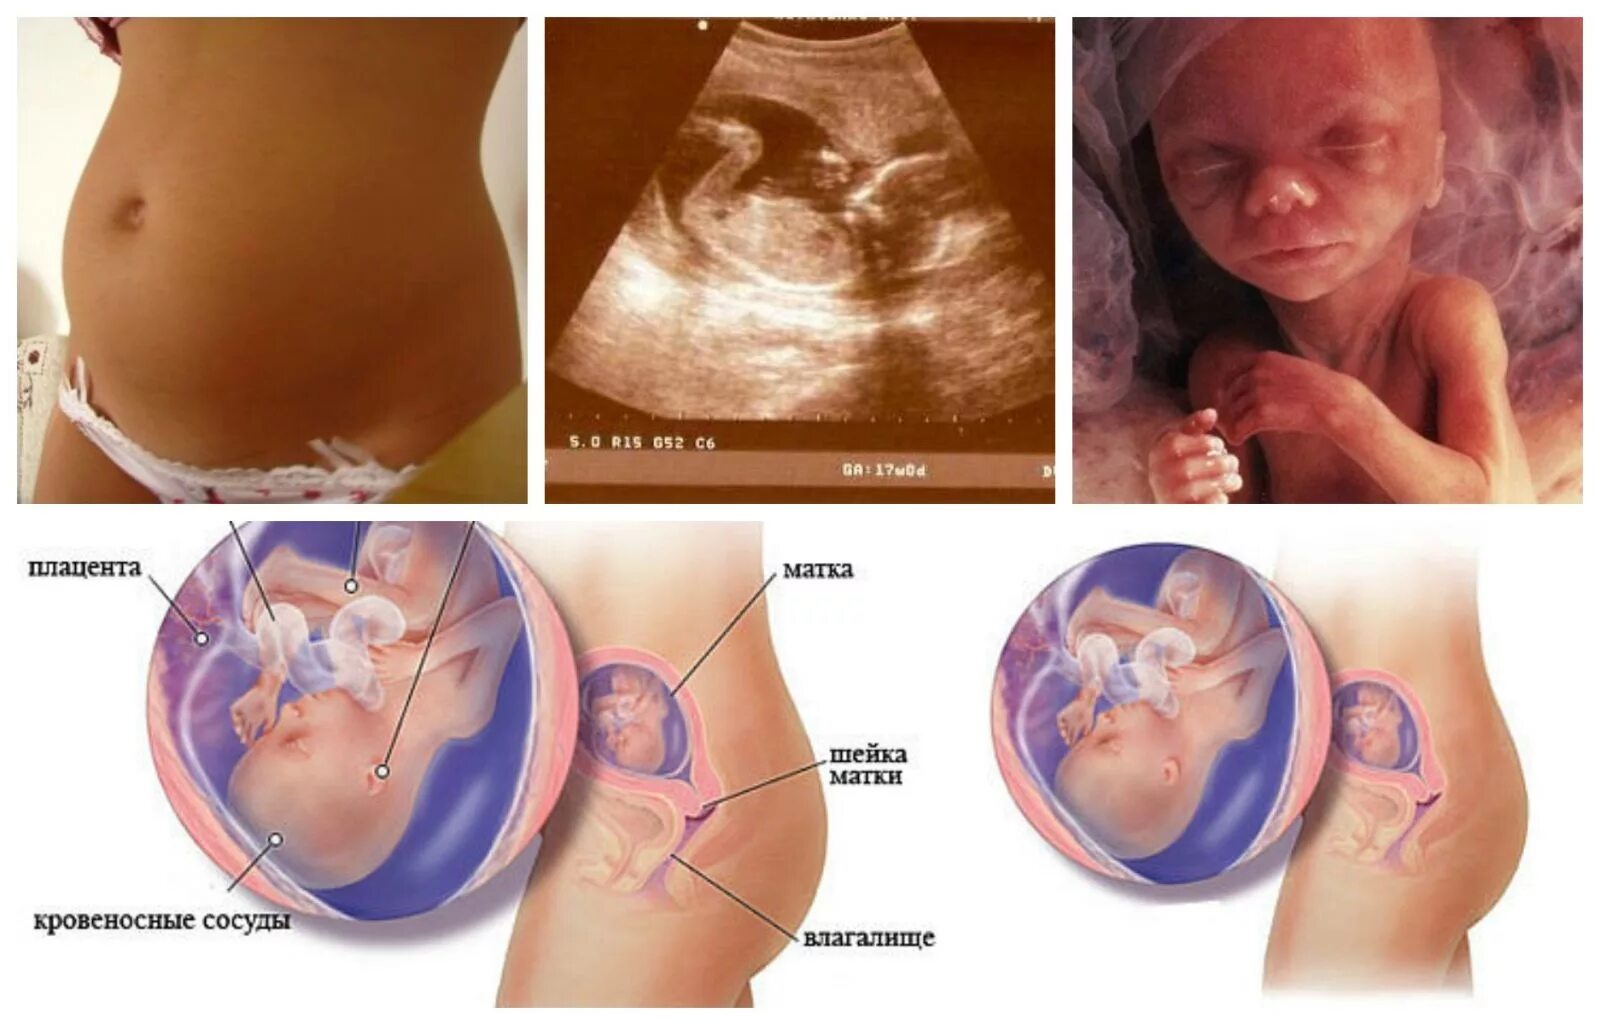 17 недель температура. Размер малыша на 17 неделе беременности. Ребенок в животе на 17 неделе беременности. Плод ребенка на 17 неделе беременности. 16-17 Недель беременности.